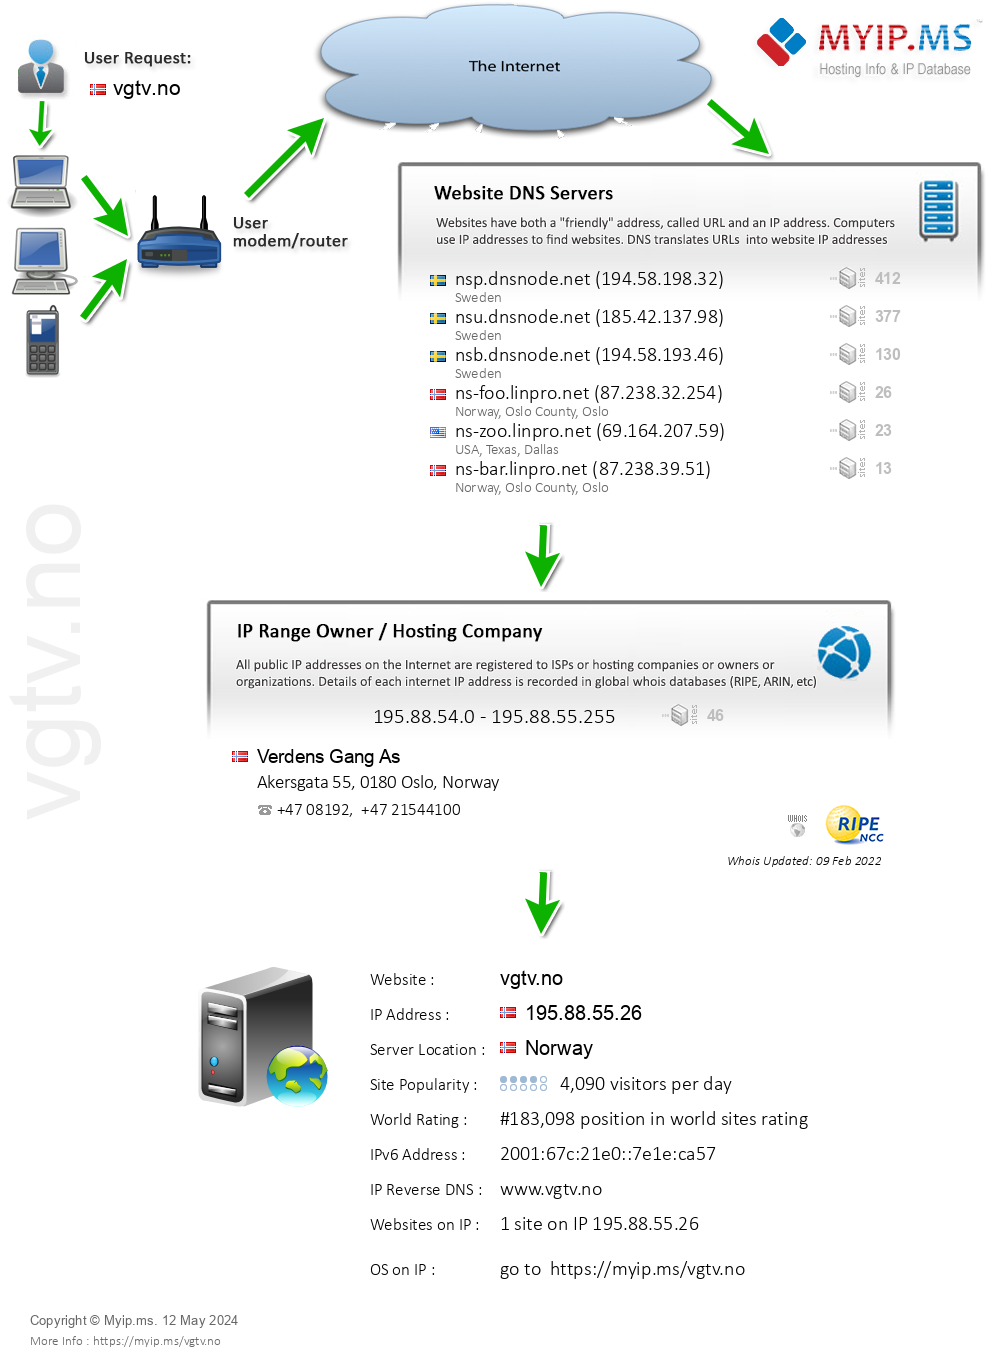 Vgtv.no - Website Hosting Visual IP Diagram